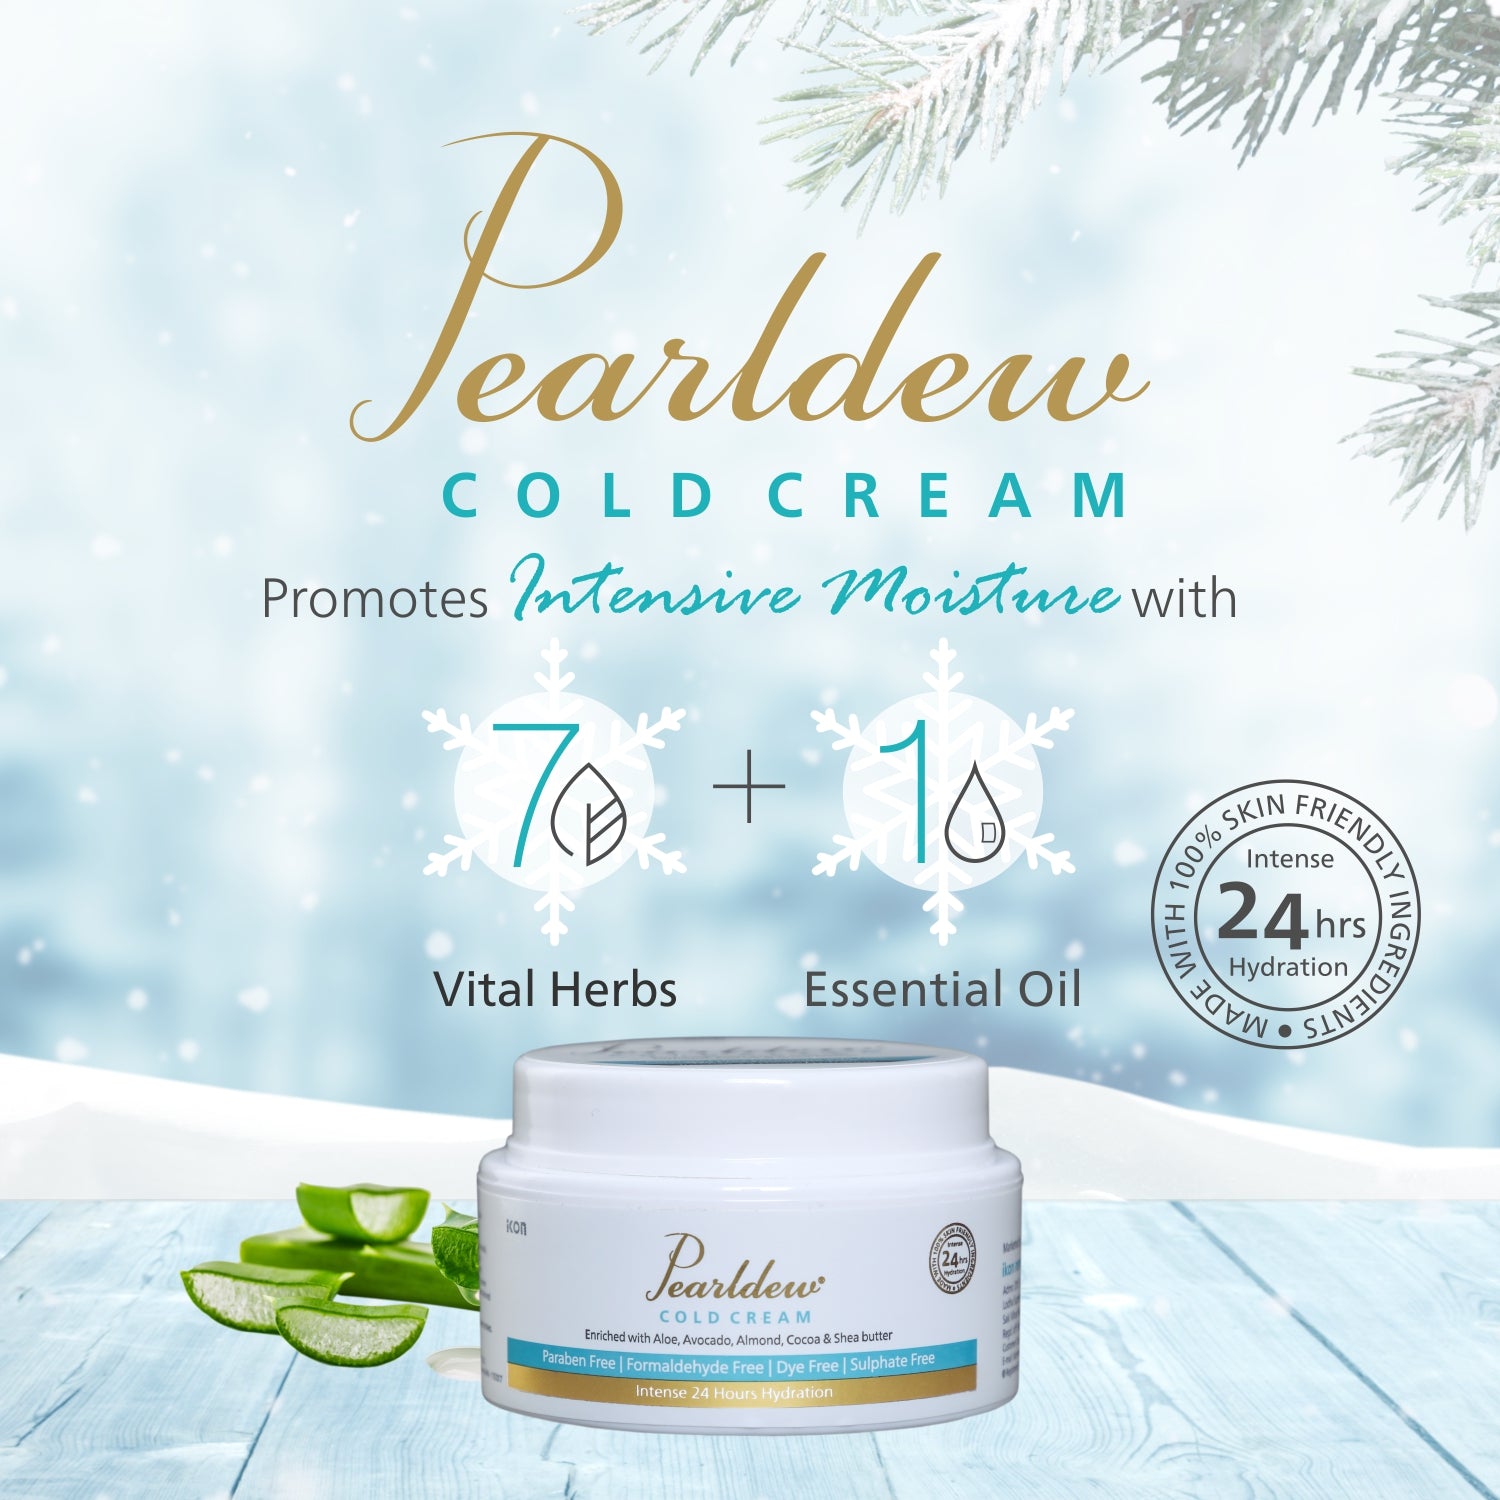 Pearldew Cold Cream (100 gm)